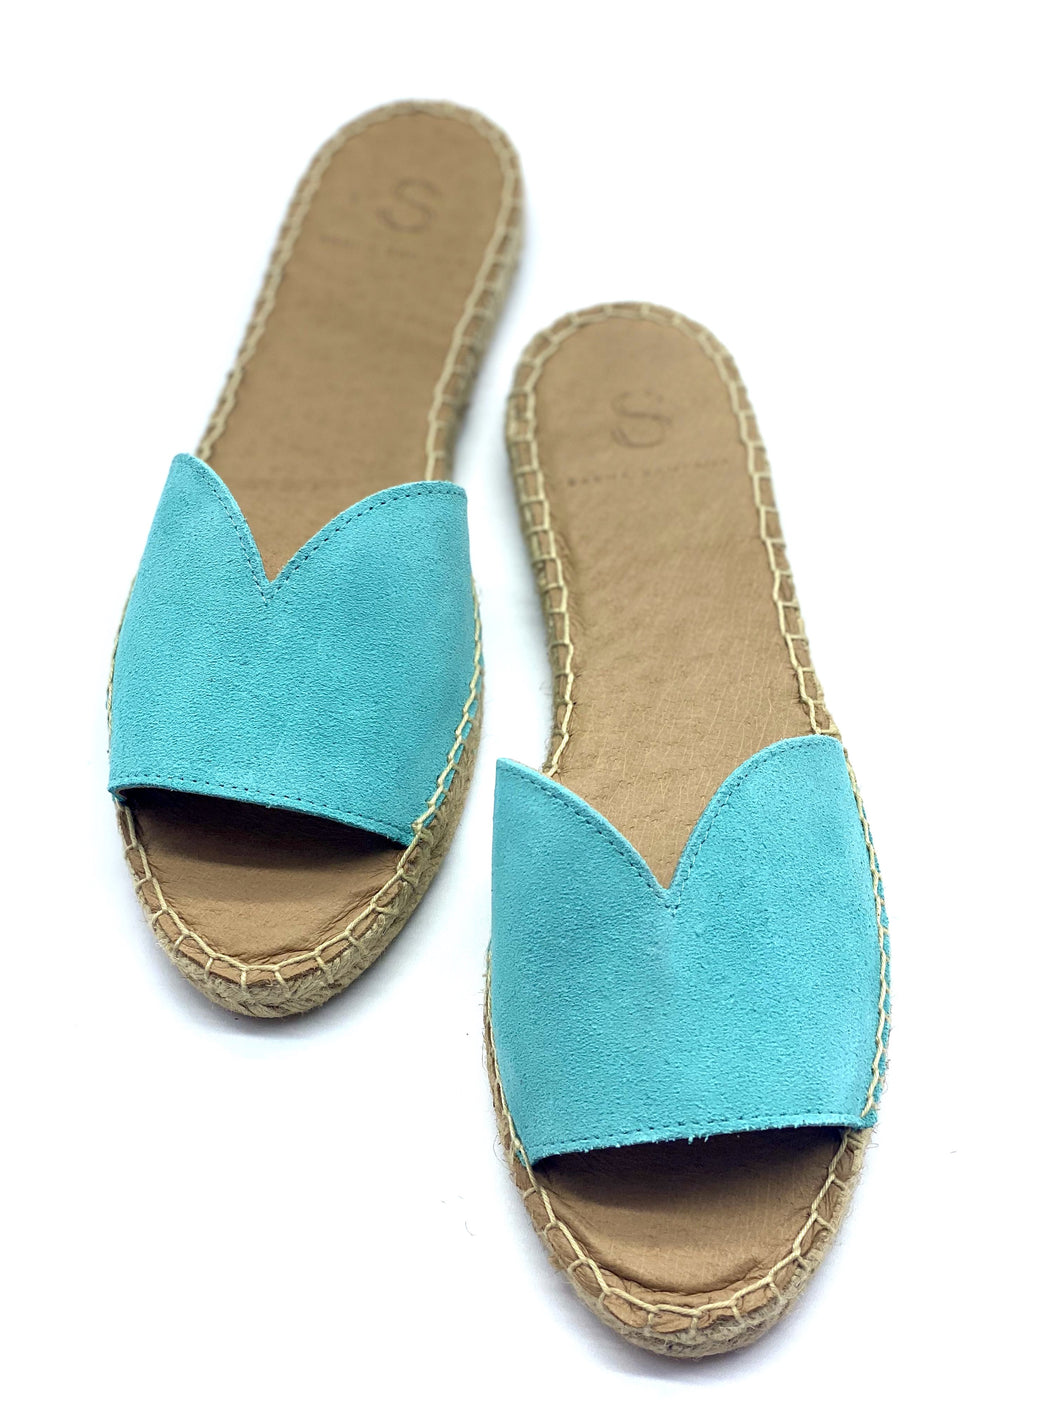 Cairo Aqua Sandals